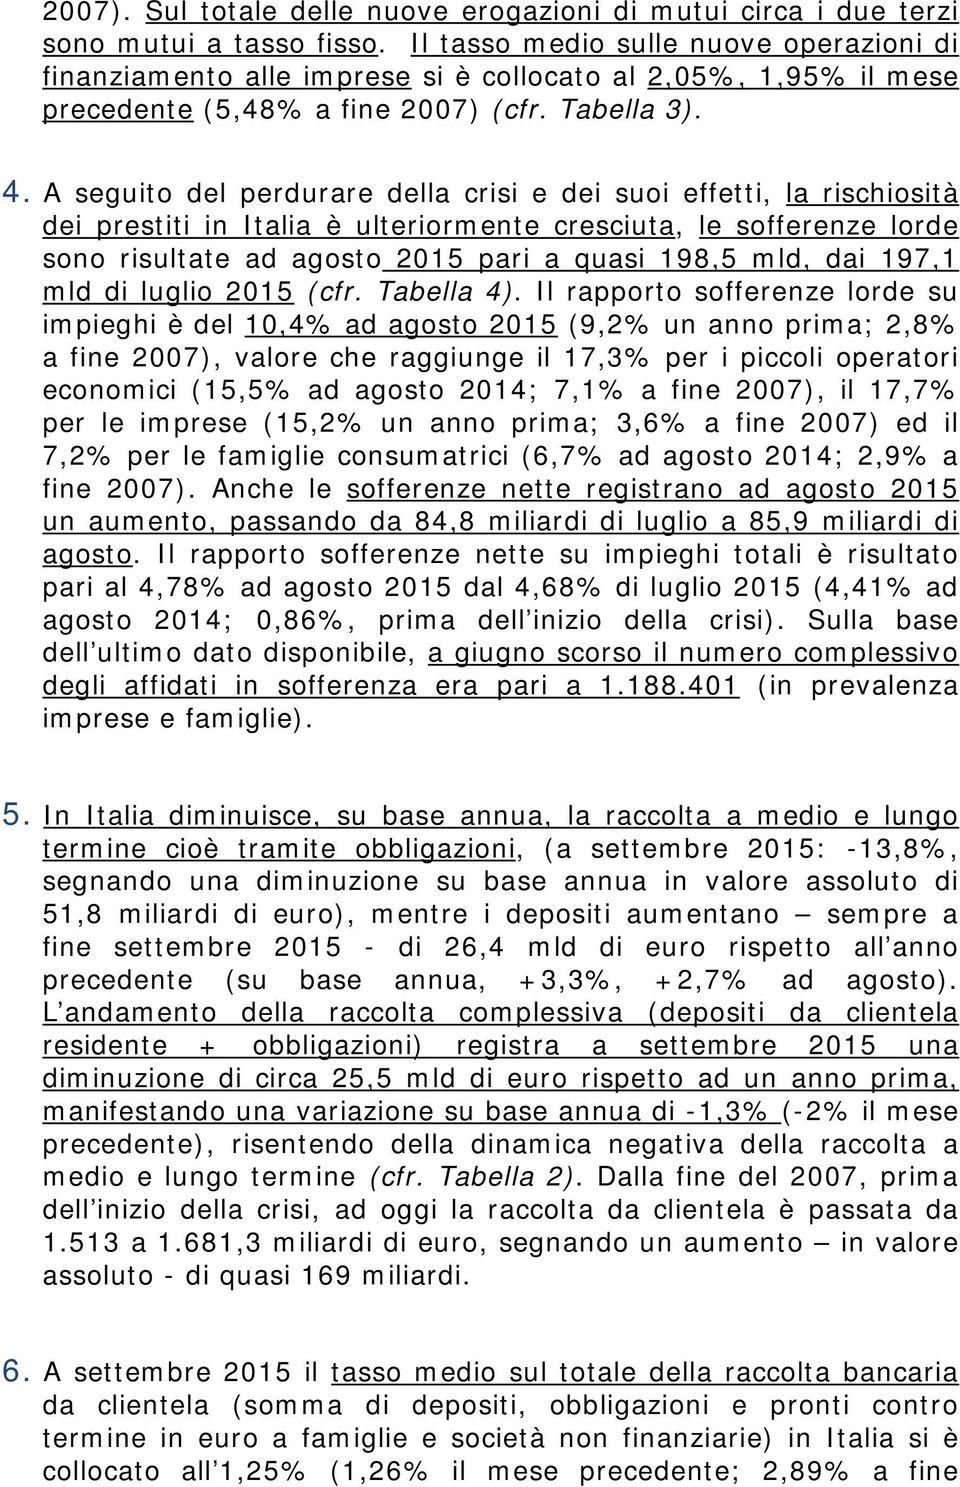 A seguito del perdurare della crisi e dei suoi effetti, la rischiosità dei prestiti in Italia è ulteriormente cresciuta, le sofferenze lorde sono risultate ad agosto 2015 pari a quasi 198,5 mld, dai